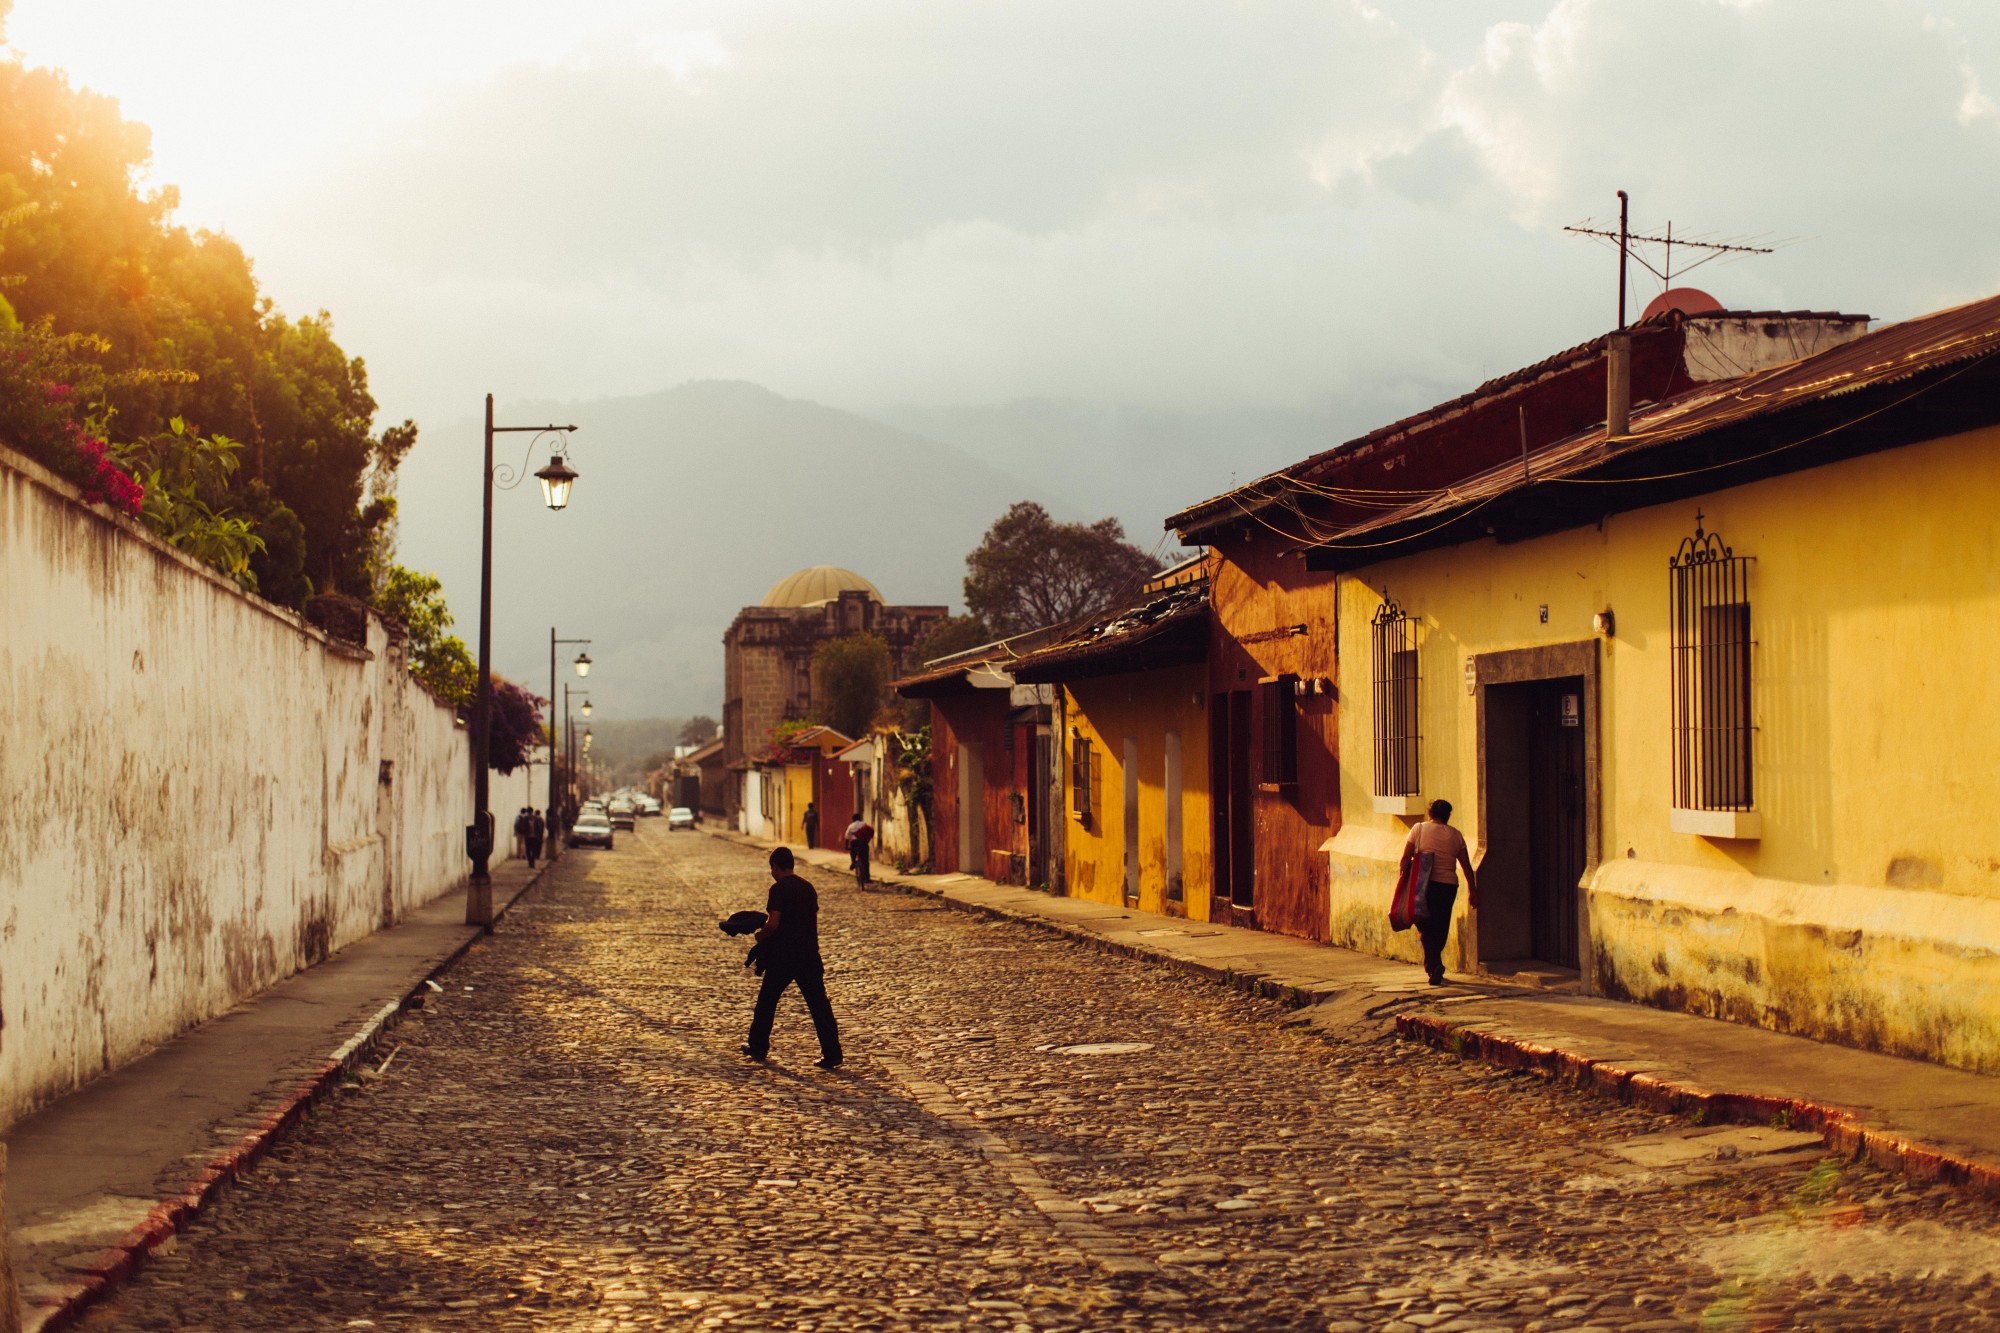 Street in Guatamala